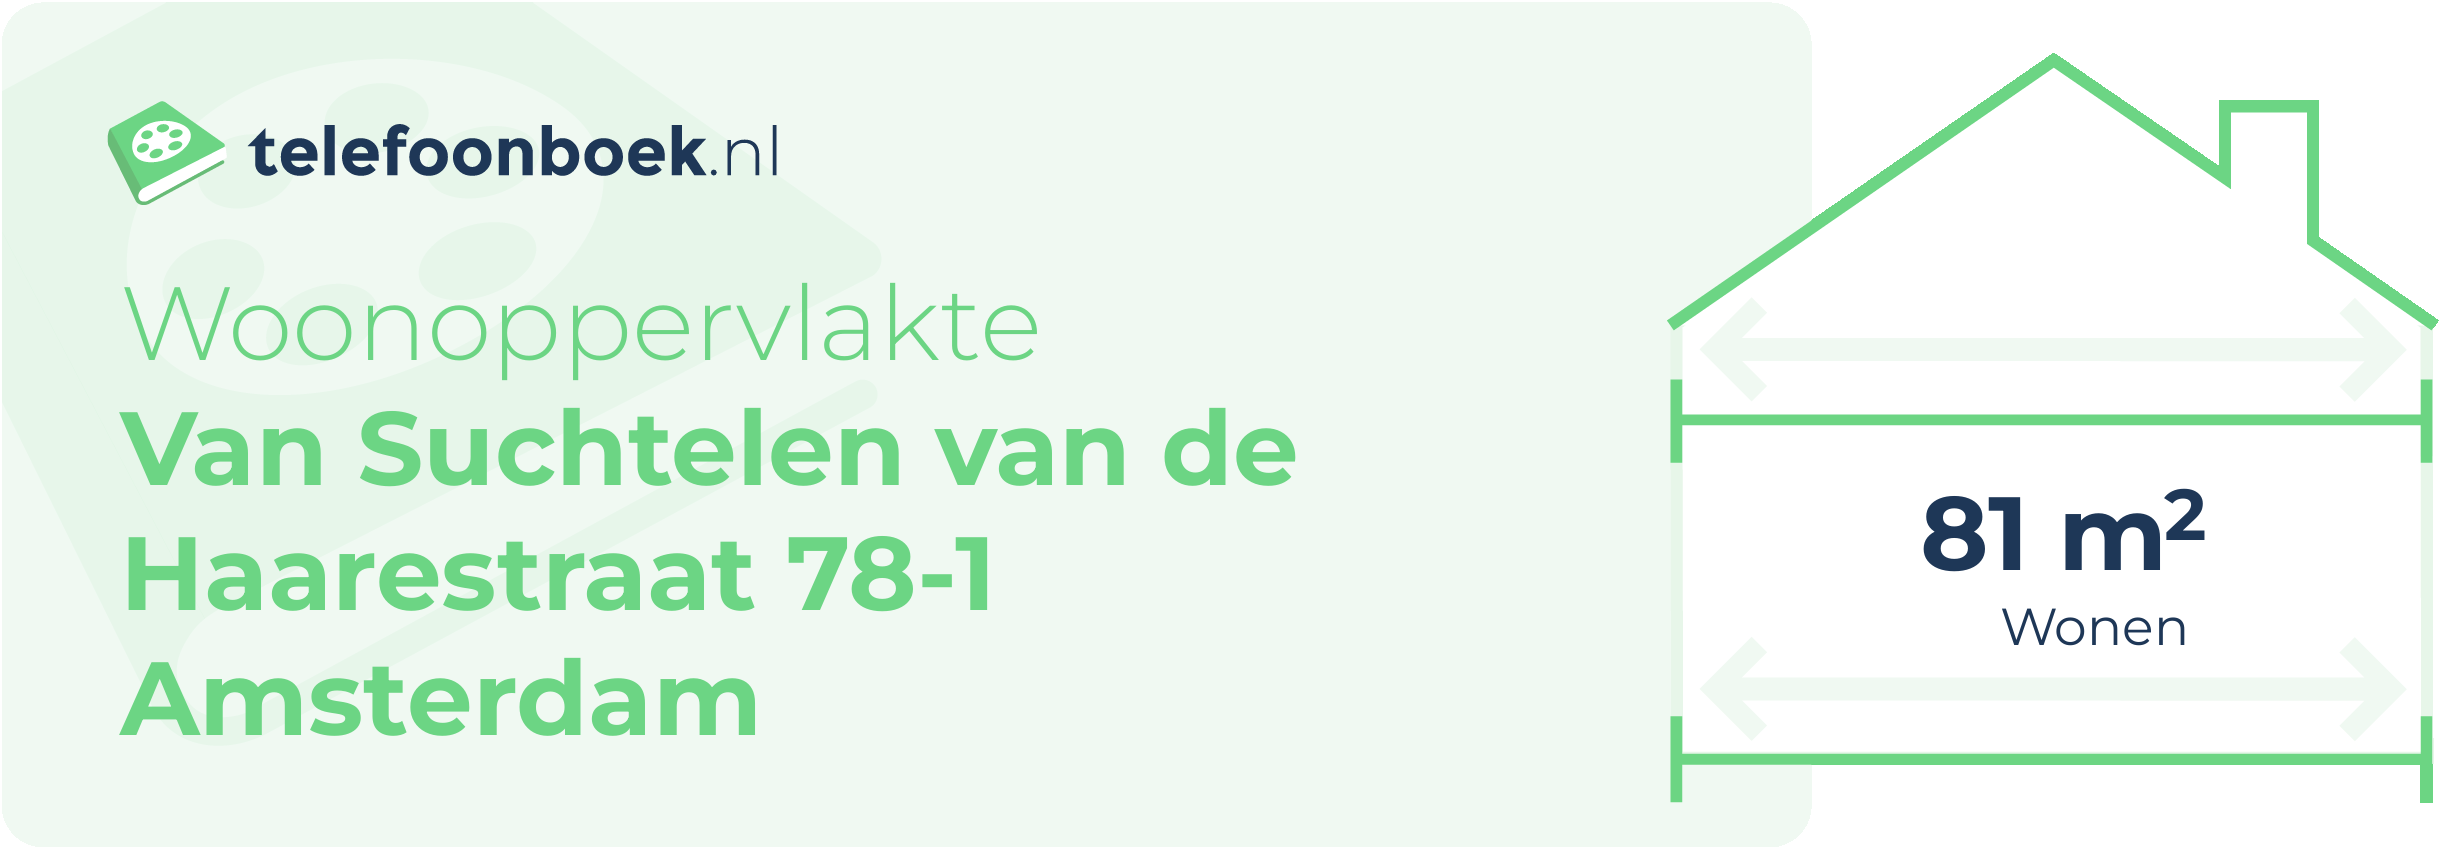 Woonoppervlakte Van Suchtelen Van De Haarestraat 78-1 Amsterdam